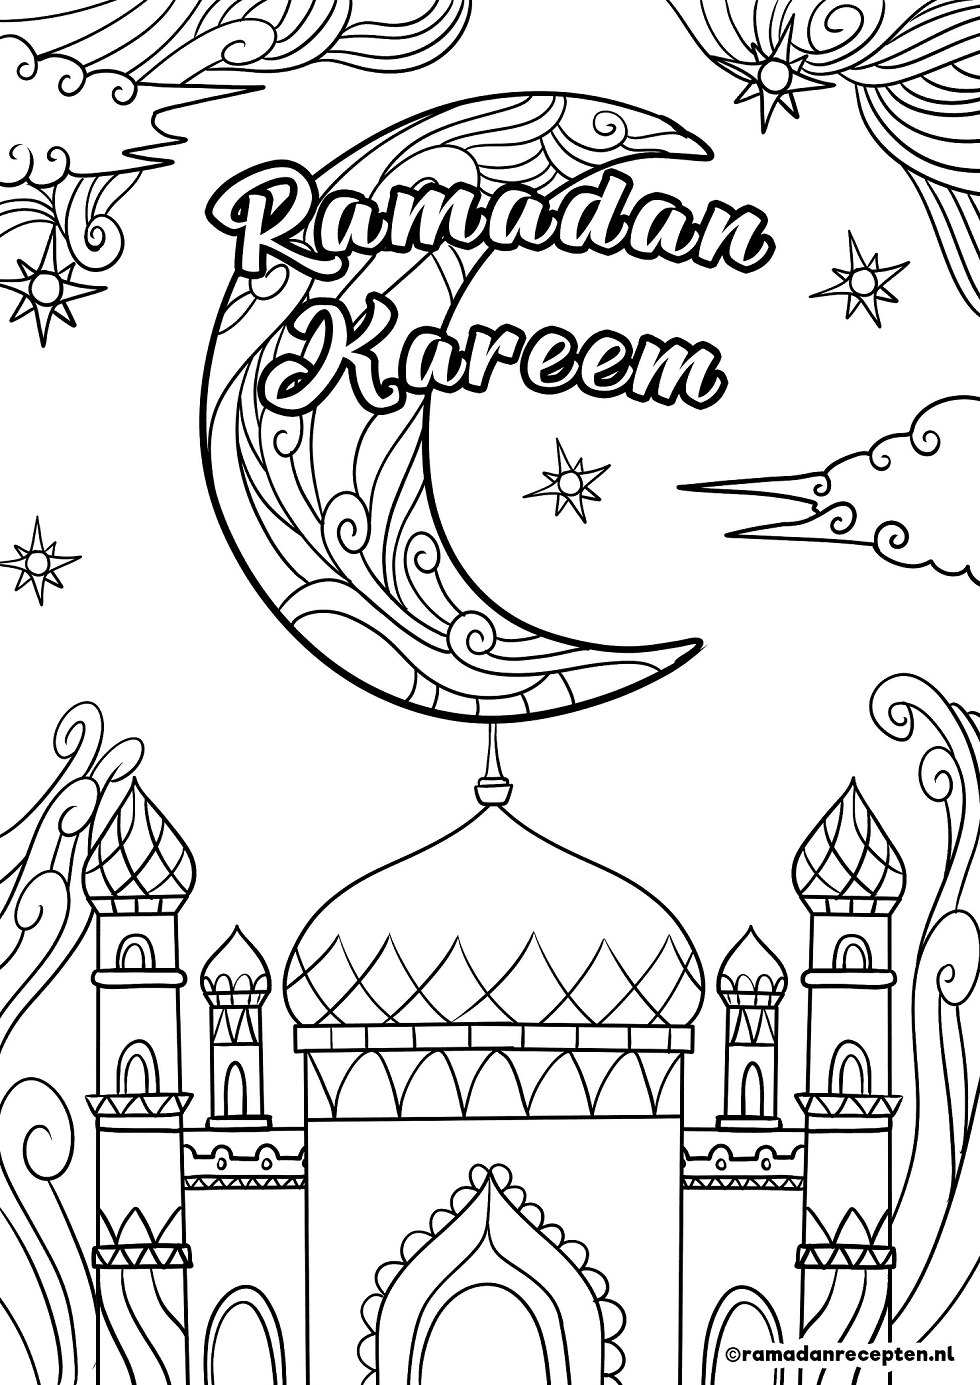 Ramadan Kareem Free Coloring Pages